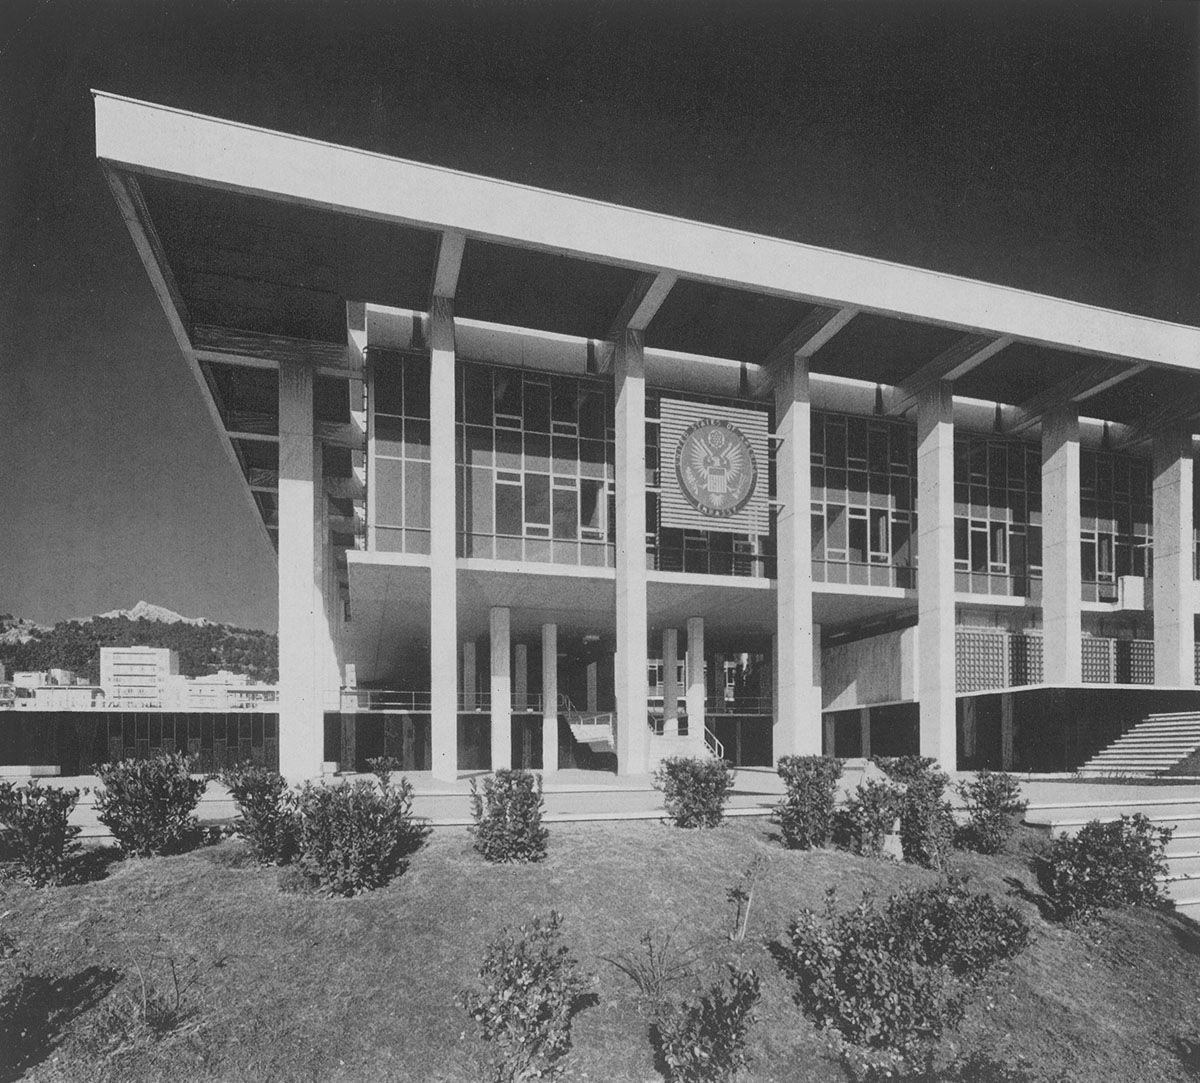 Az USA követségi épülete, Athén (1956) (Kép forrása: Preisich Gábor: Walter Gropius)